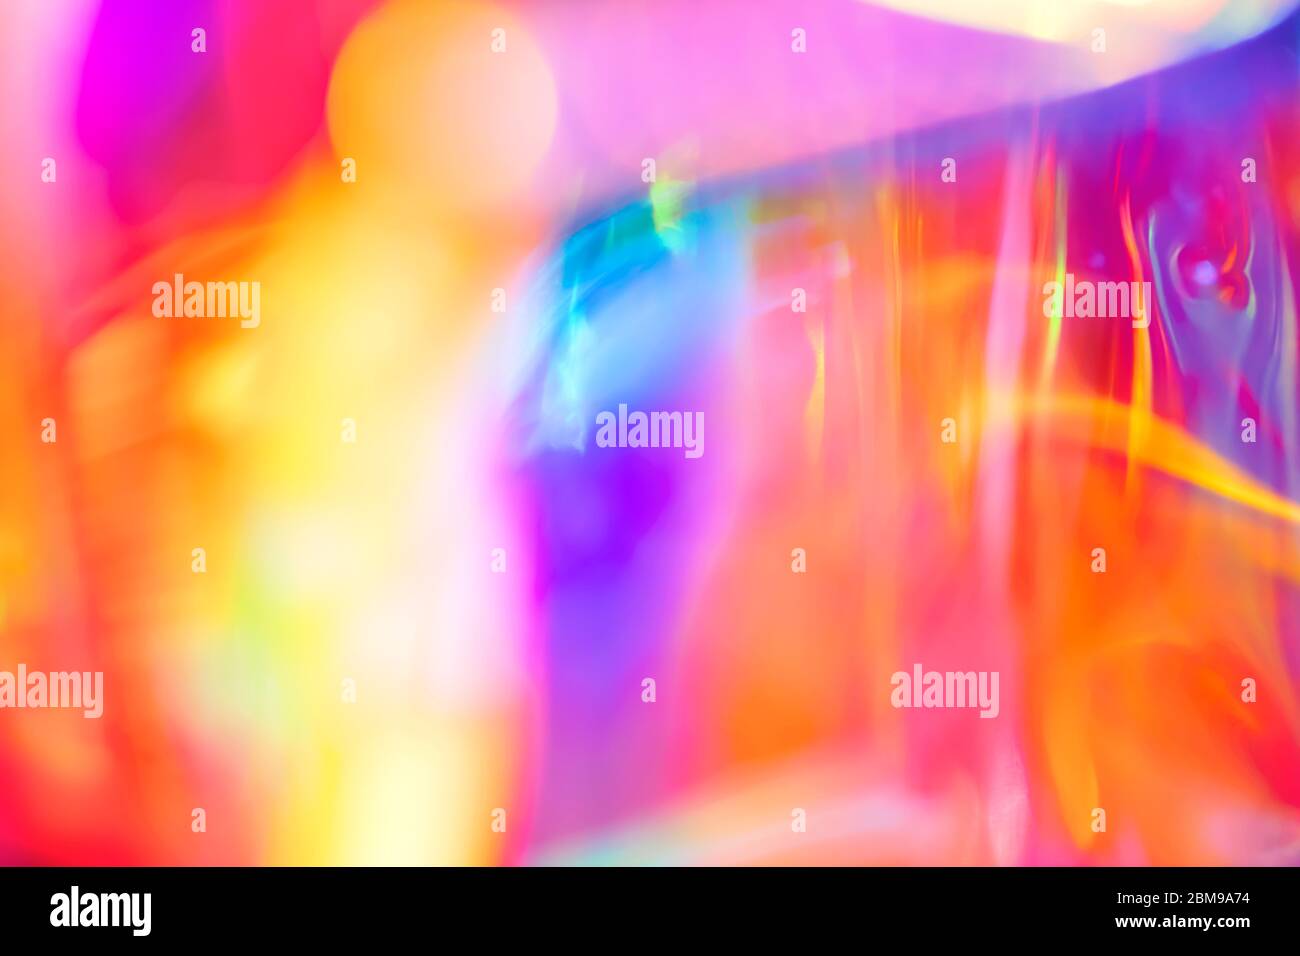 Abstrait holographique festif psychédélique pop fond de lignes fluides et tourbillons dans des couleurs vives de l'arc-en-ciel néon et lumière brillante Banque D'Images